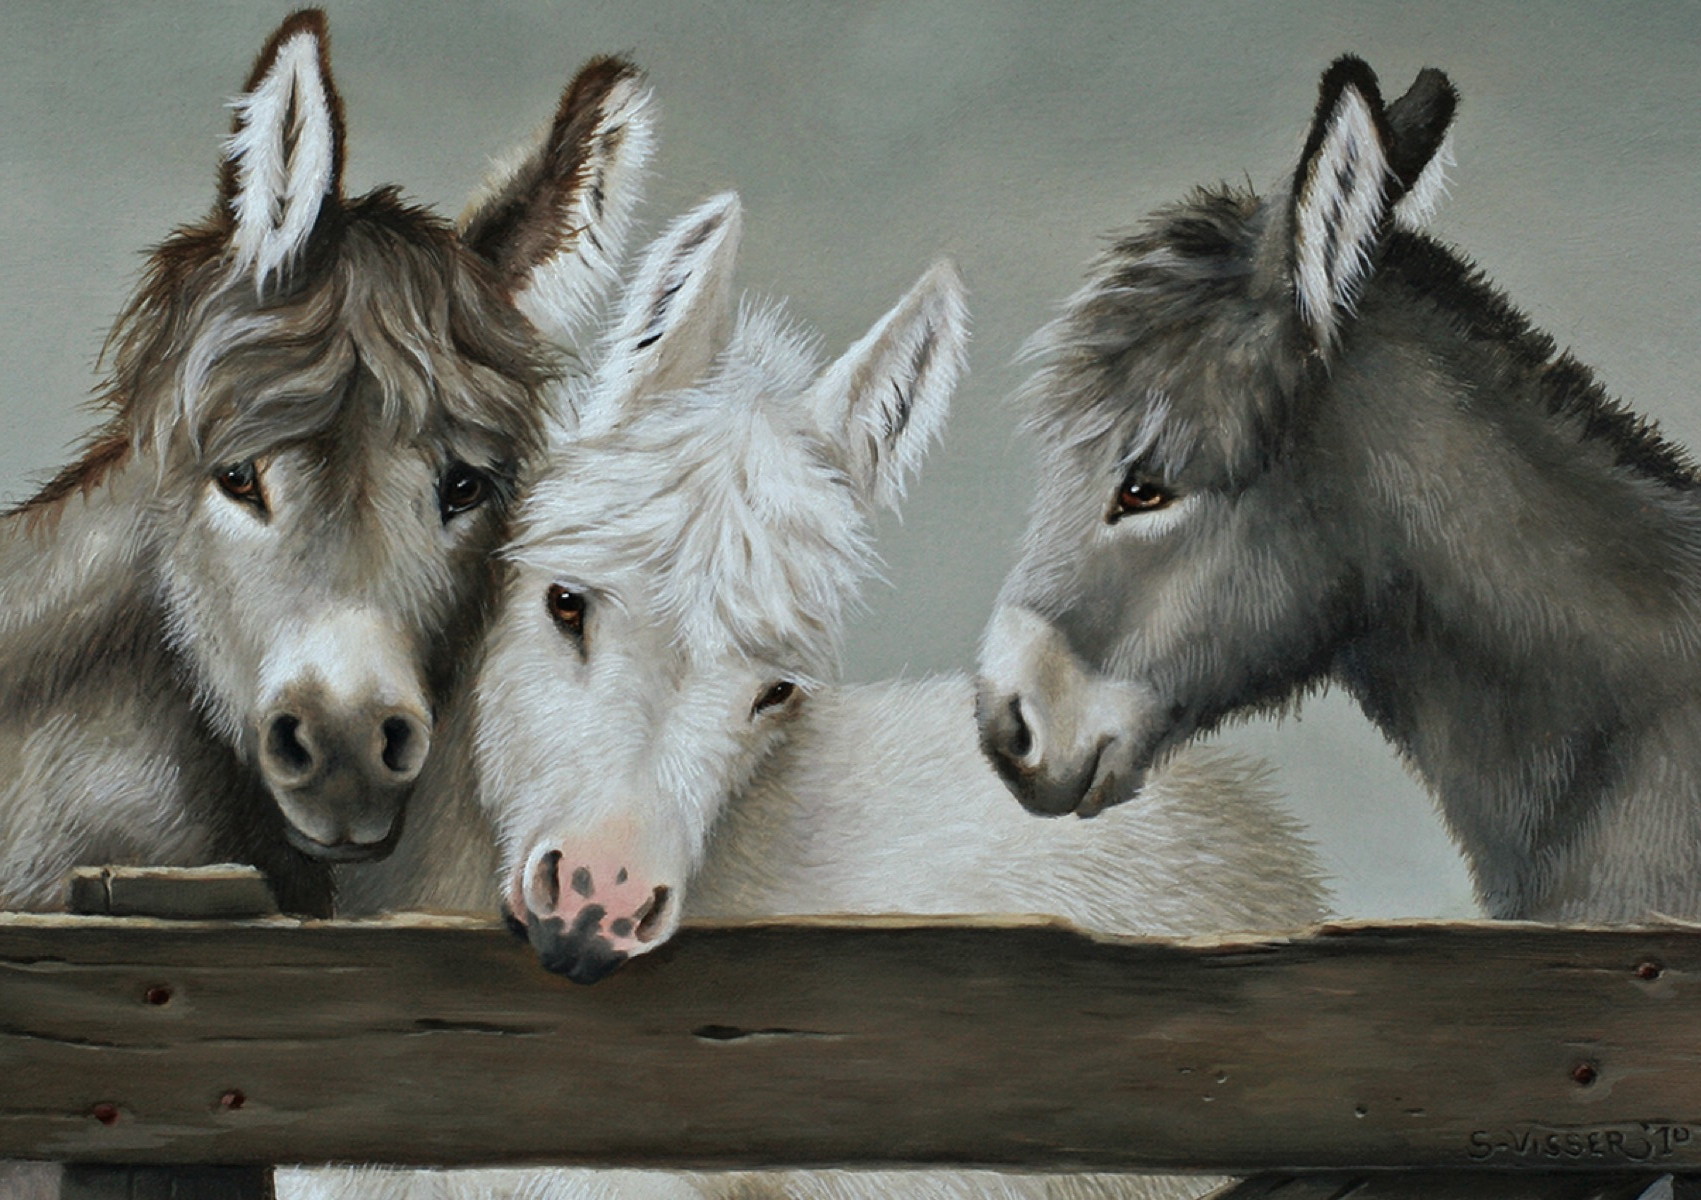 KD trio of donkeys